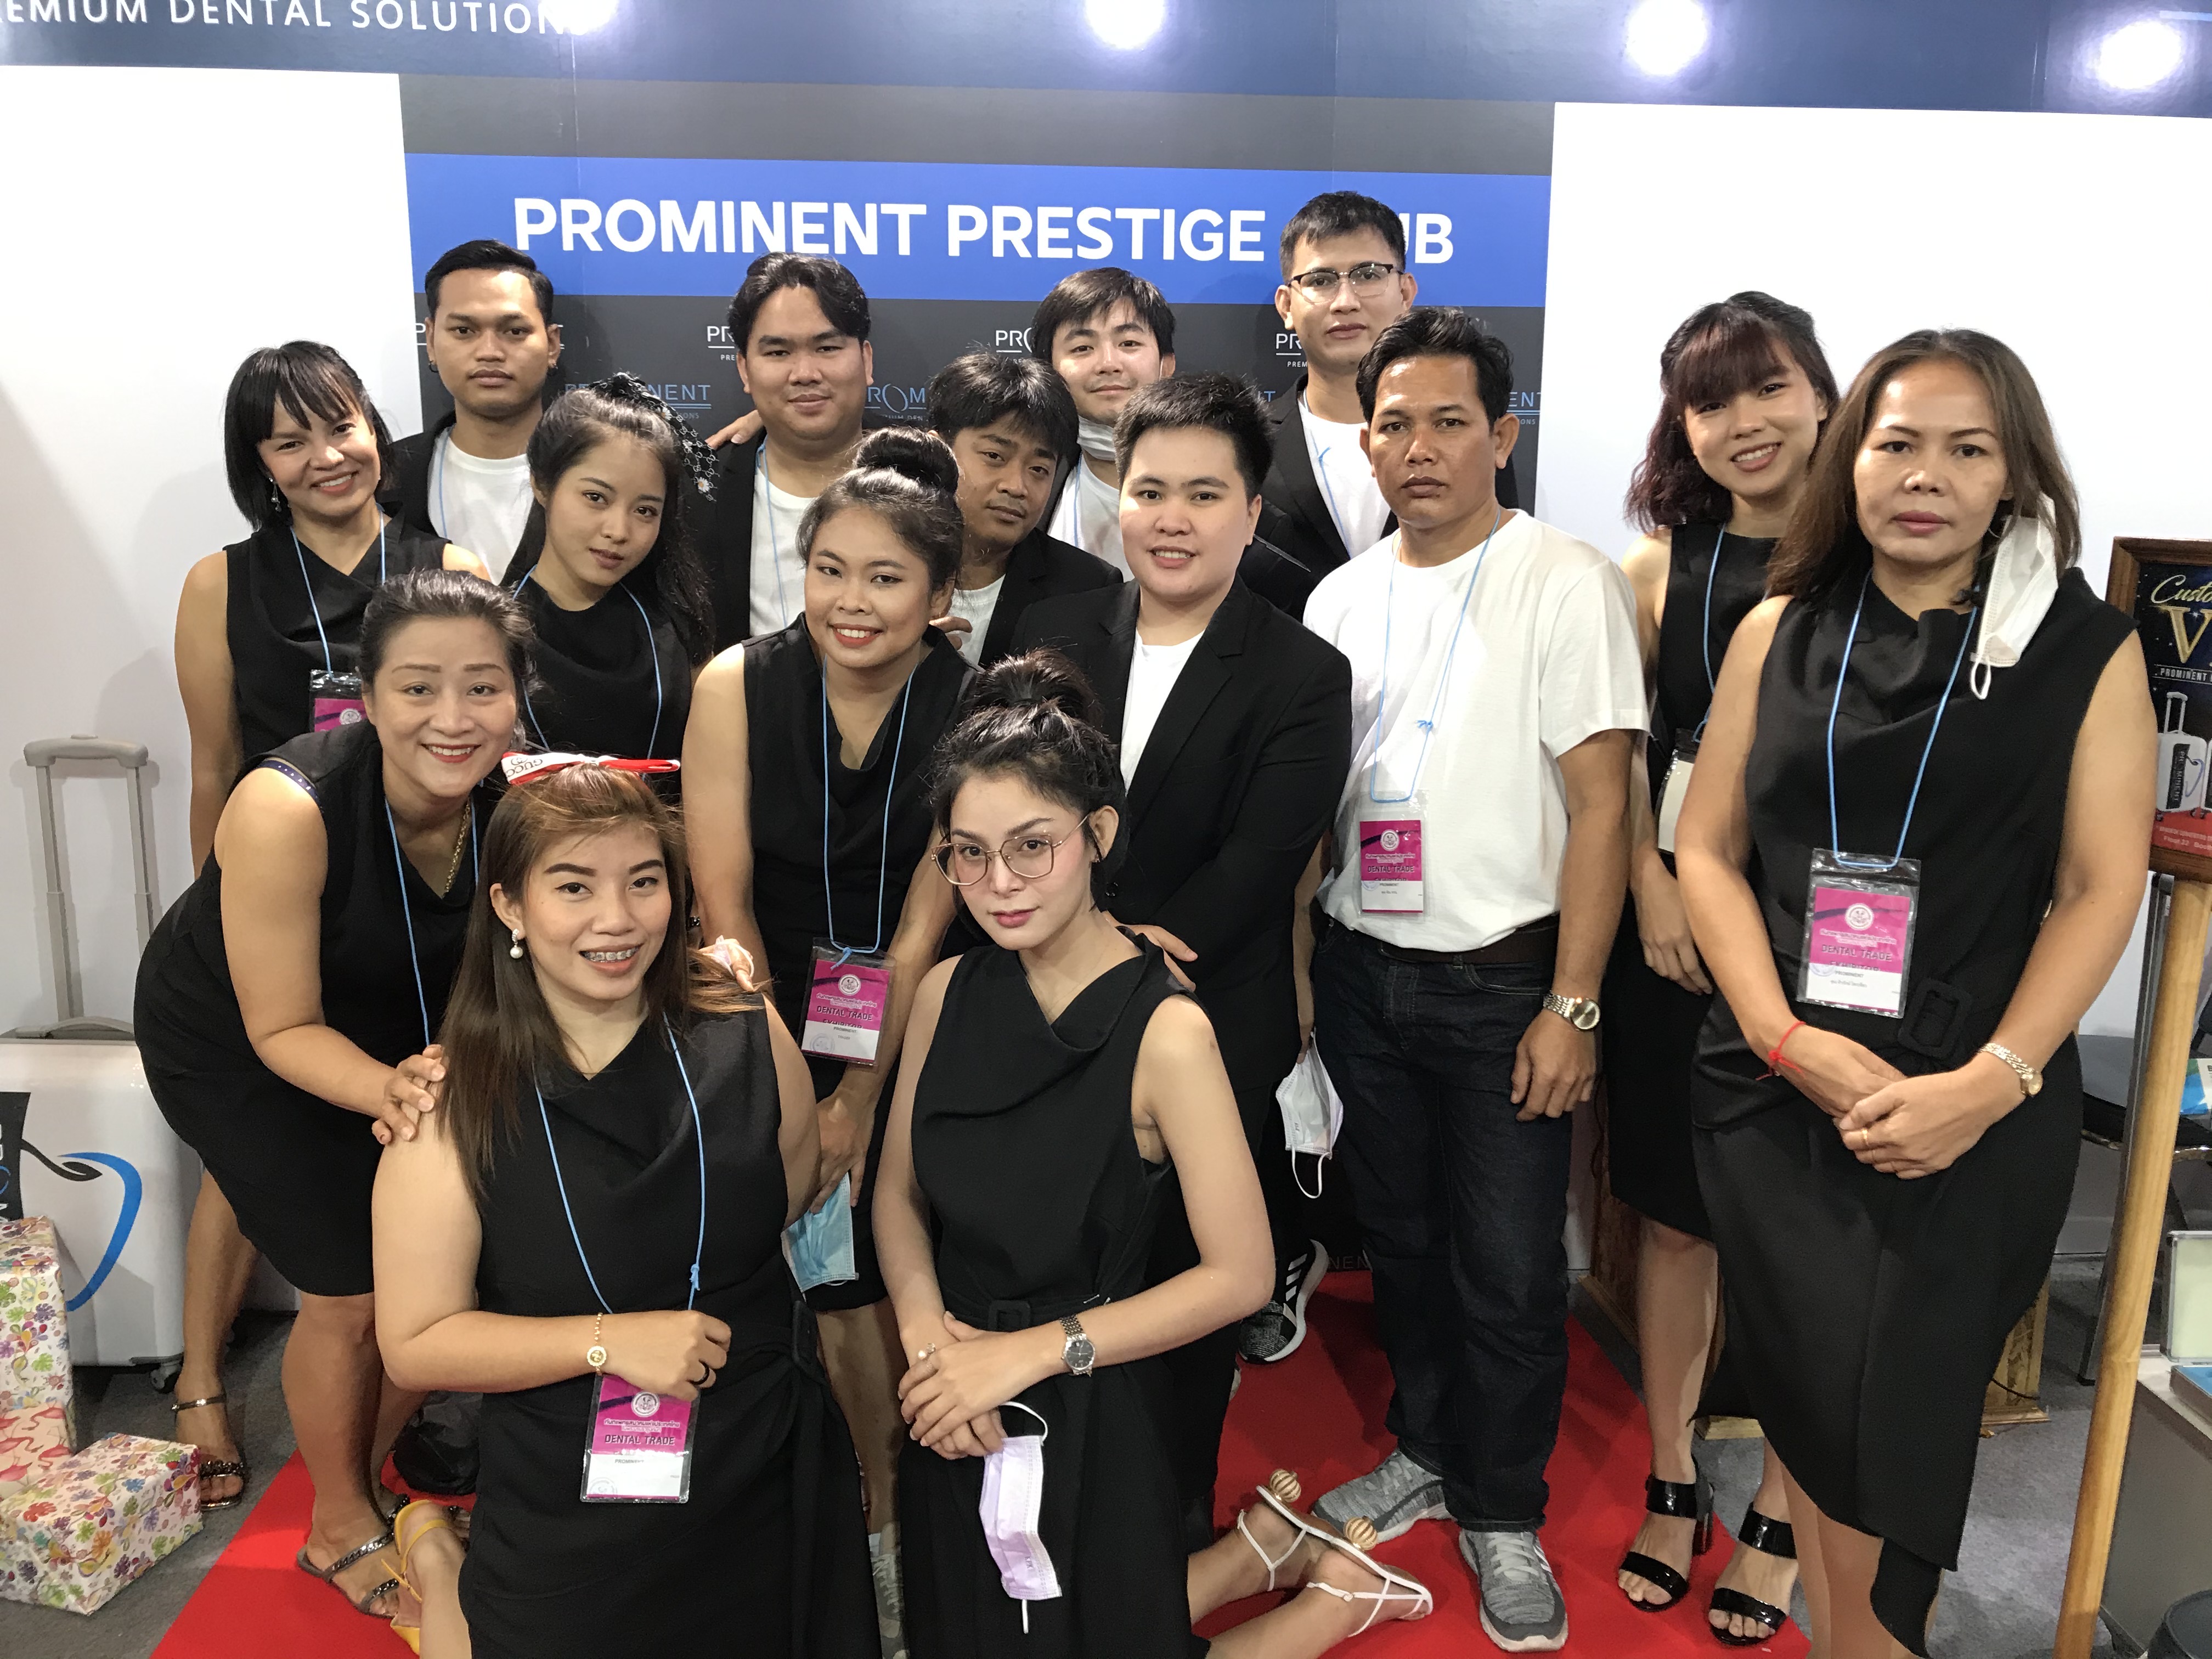 งาน Dent' Expo 111th Bangkok Convention Centre at Central World